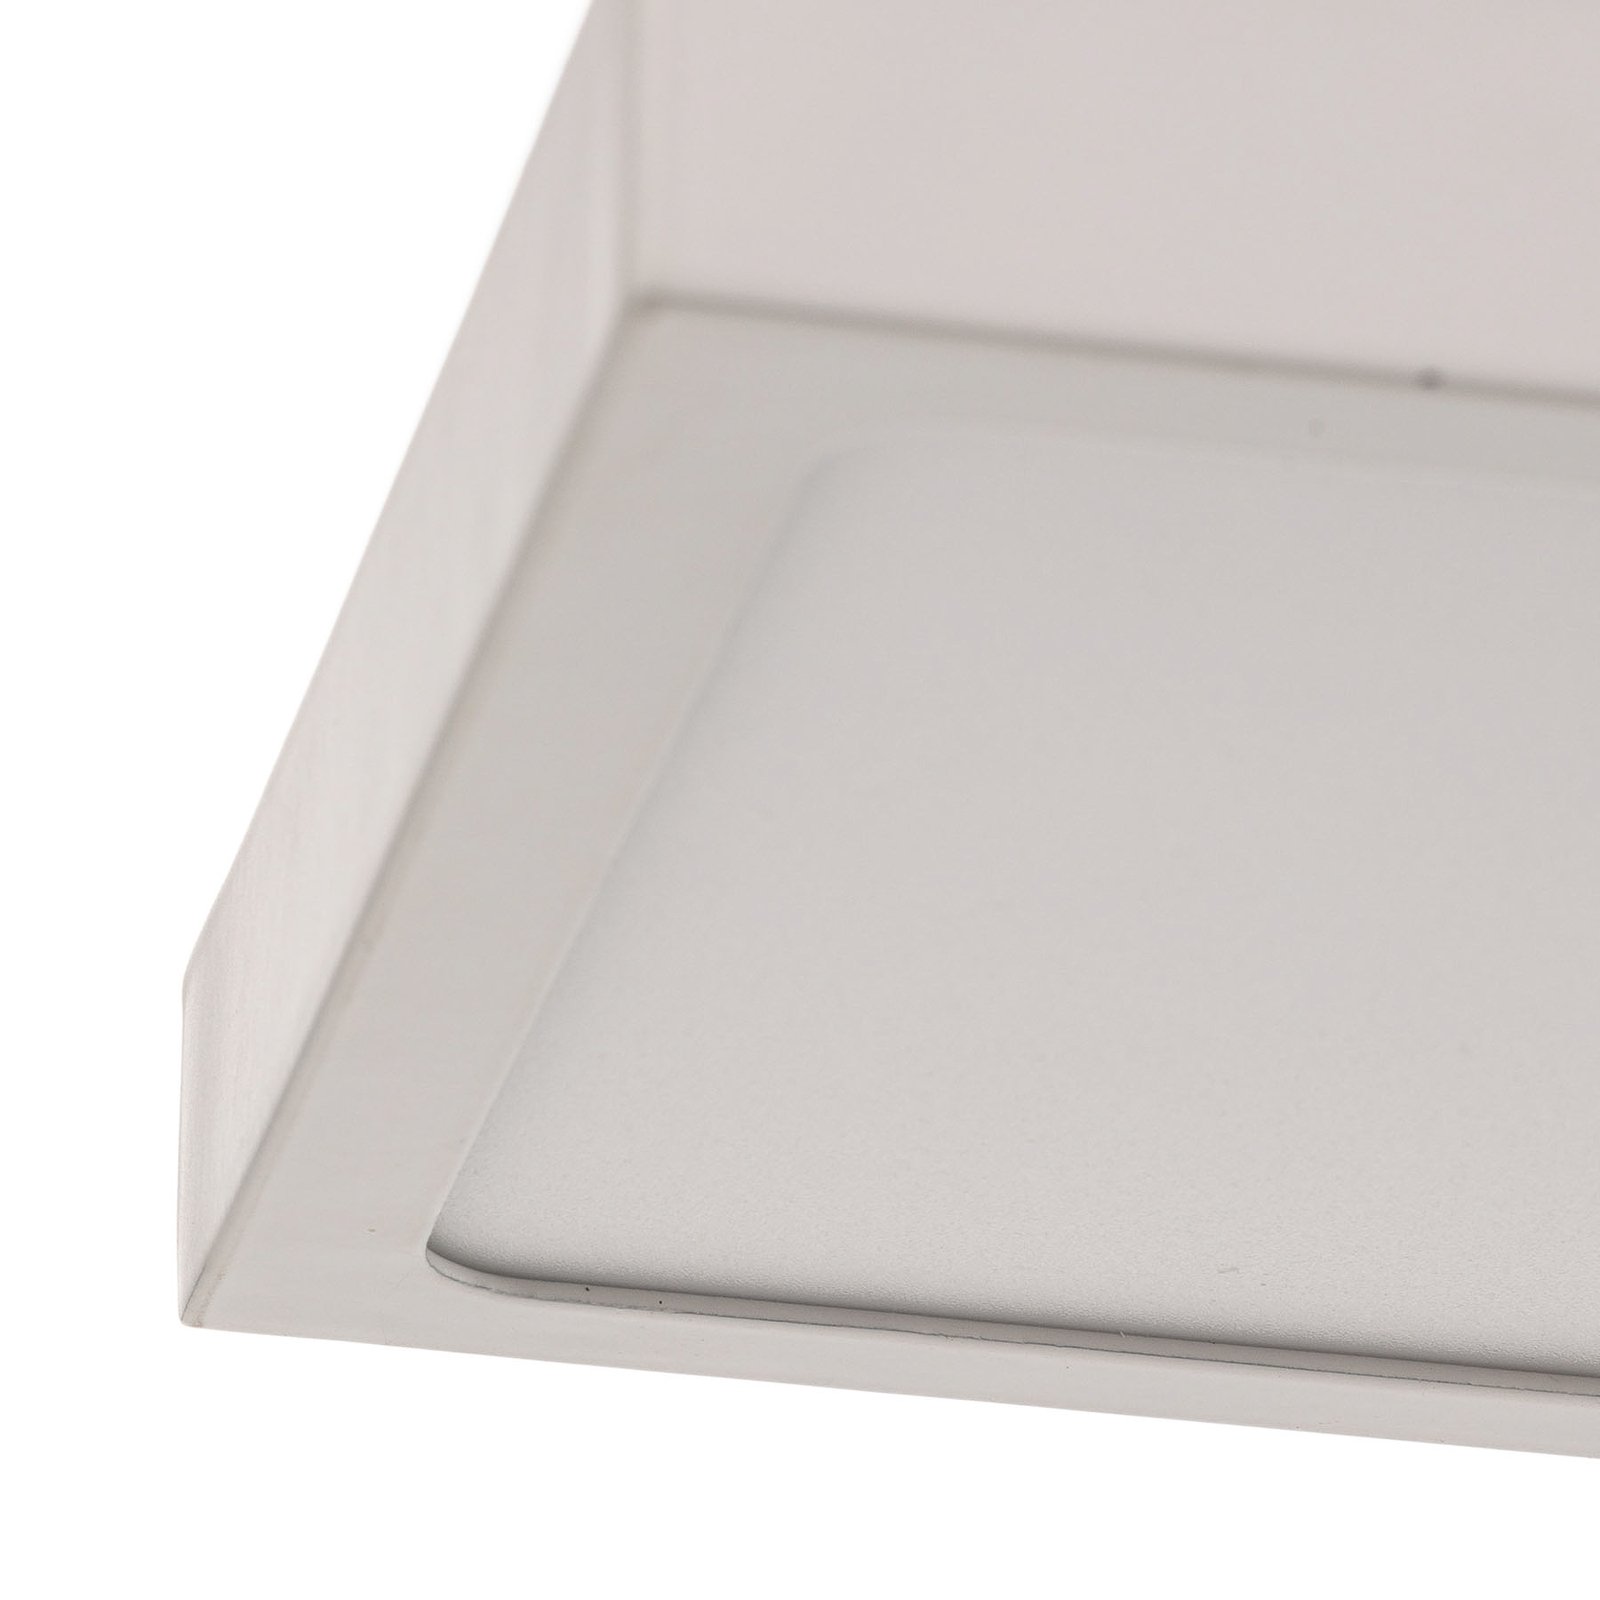 LED nástěnné světlo Vika, čtverec, bílá, 18x18cm